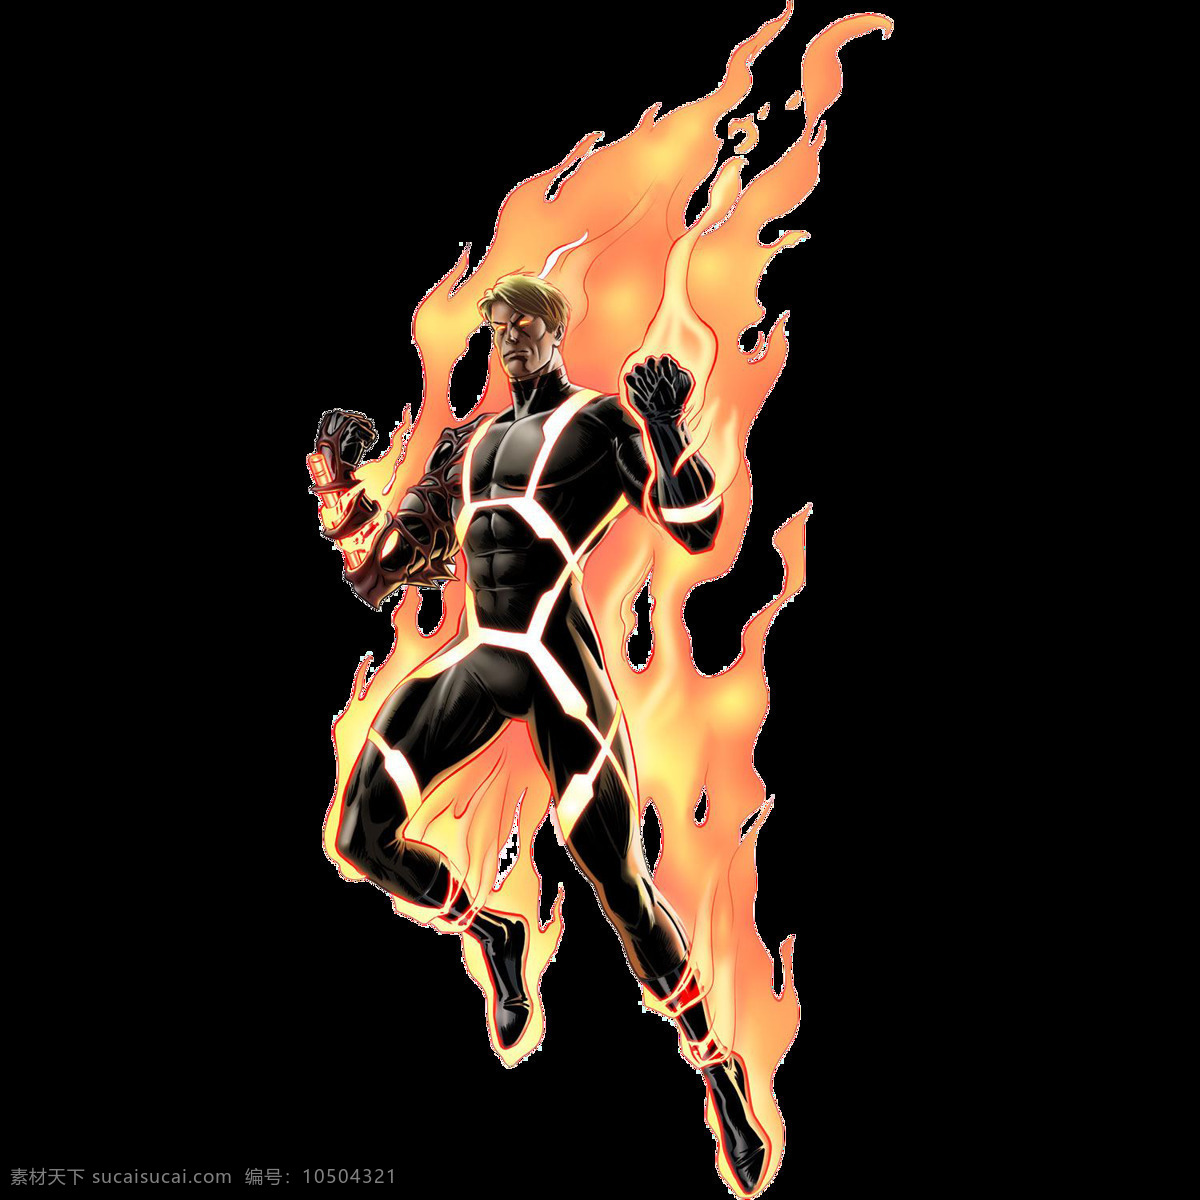 着火 人 免 抠 透明 着火的人图片 霹雳火图片 霹雳火漫画图 霹雳火视觉图 霹雳火创意图 火人漫画 燃烧的人 着火的人 点着的火人